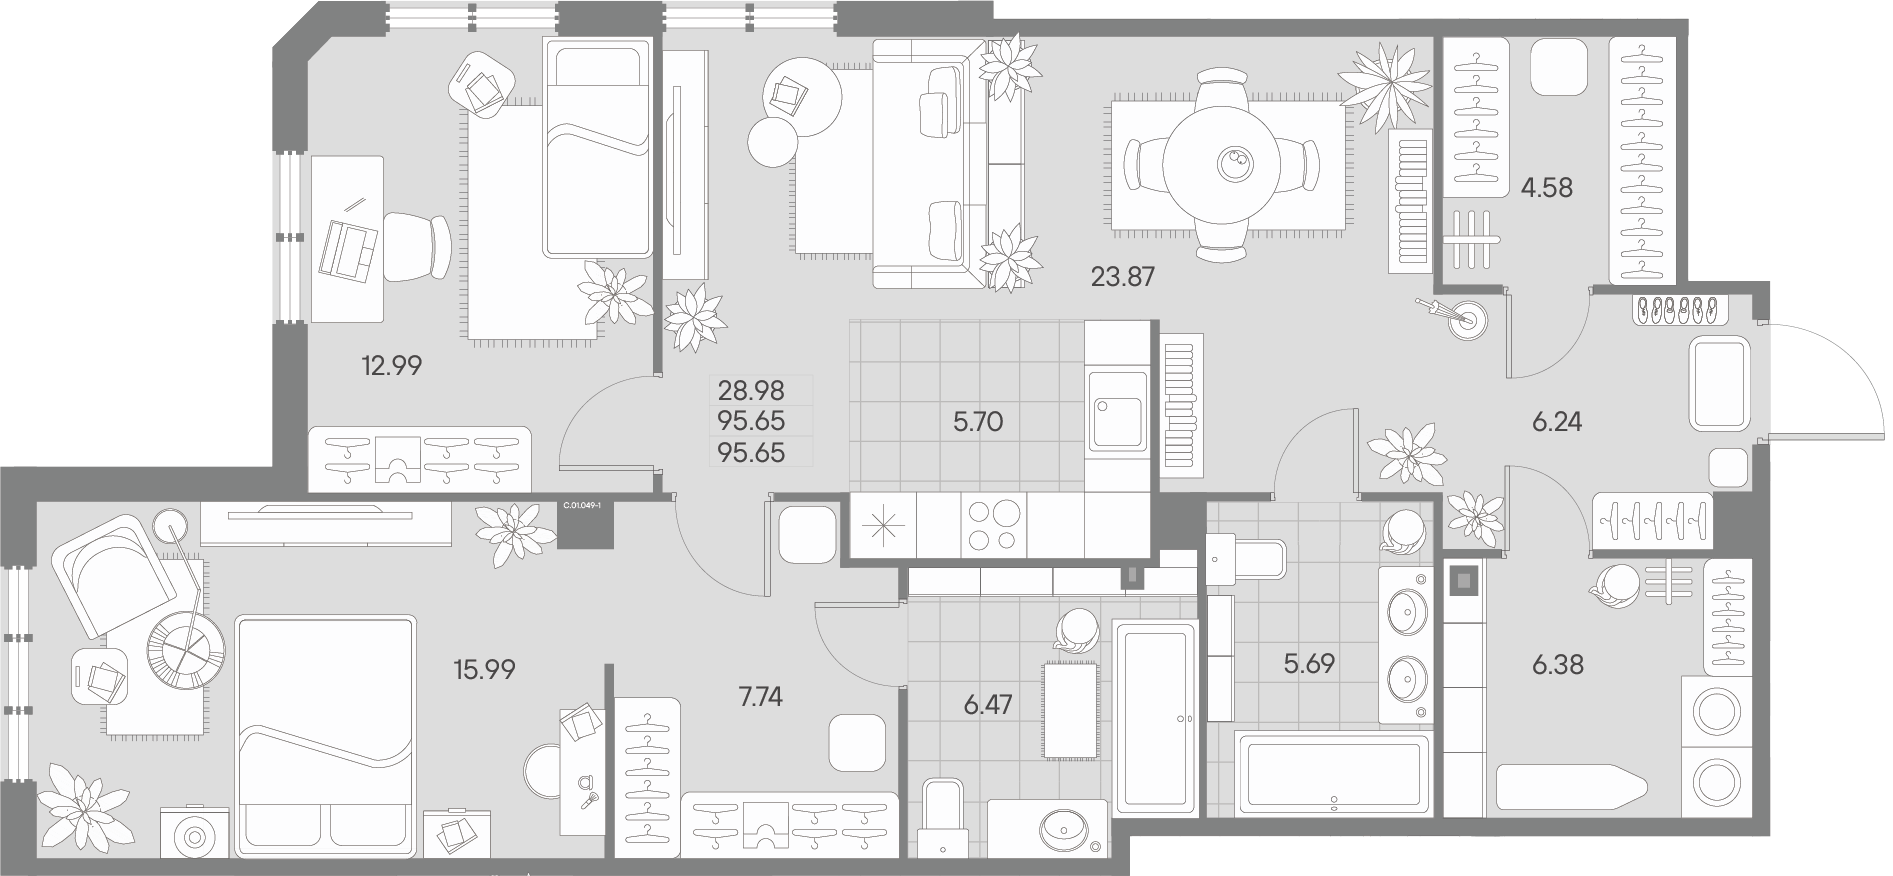 2-комнатная квартира  №49-1 в AMO: 95.65 м², этаж 1 - купить в Санкт-Петербурге